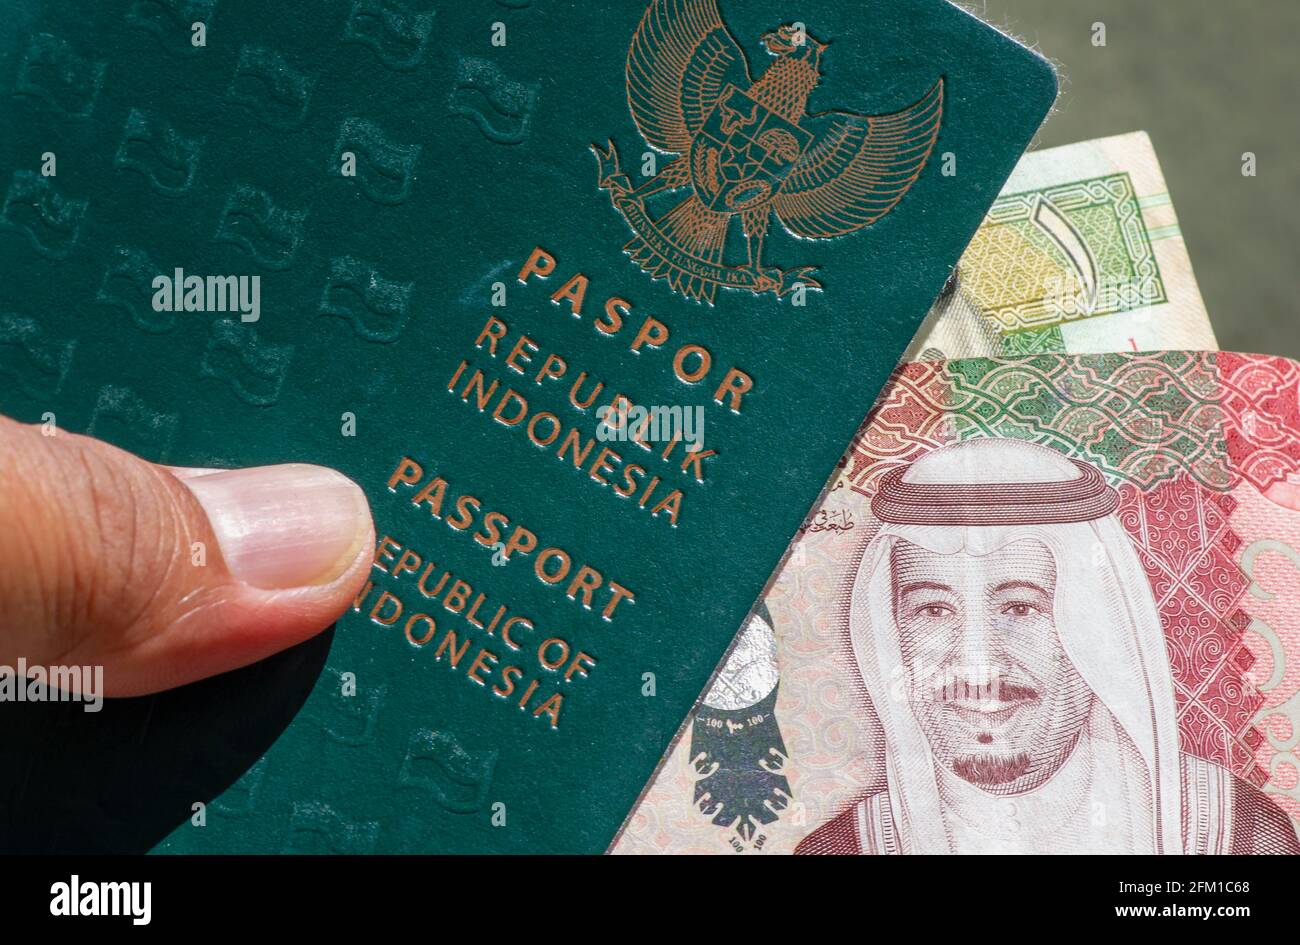 Primer plano del pasaporte verde indonesio y de la Riyal Saudita, la moneda de Arabia Saudita, para la preparación de peregrinos procedentes de Indonesia Foto de stock